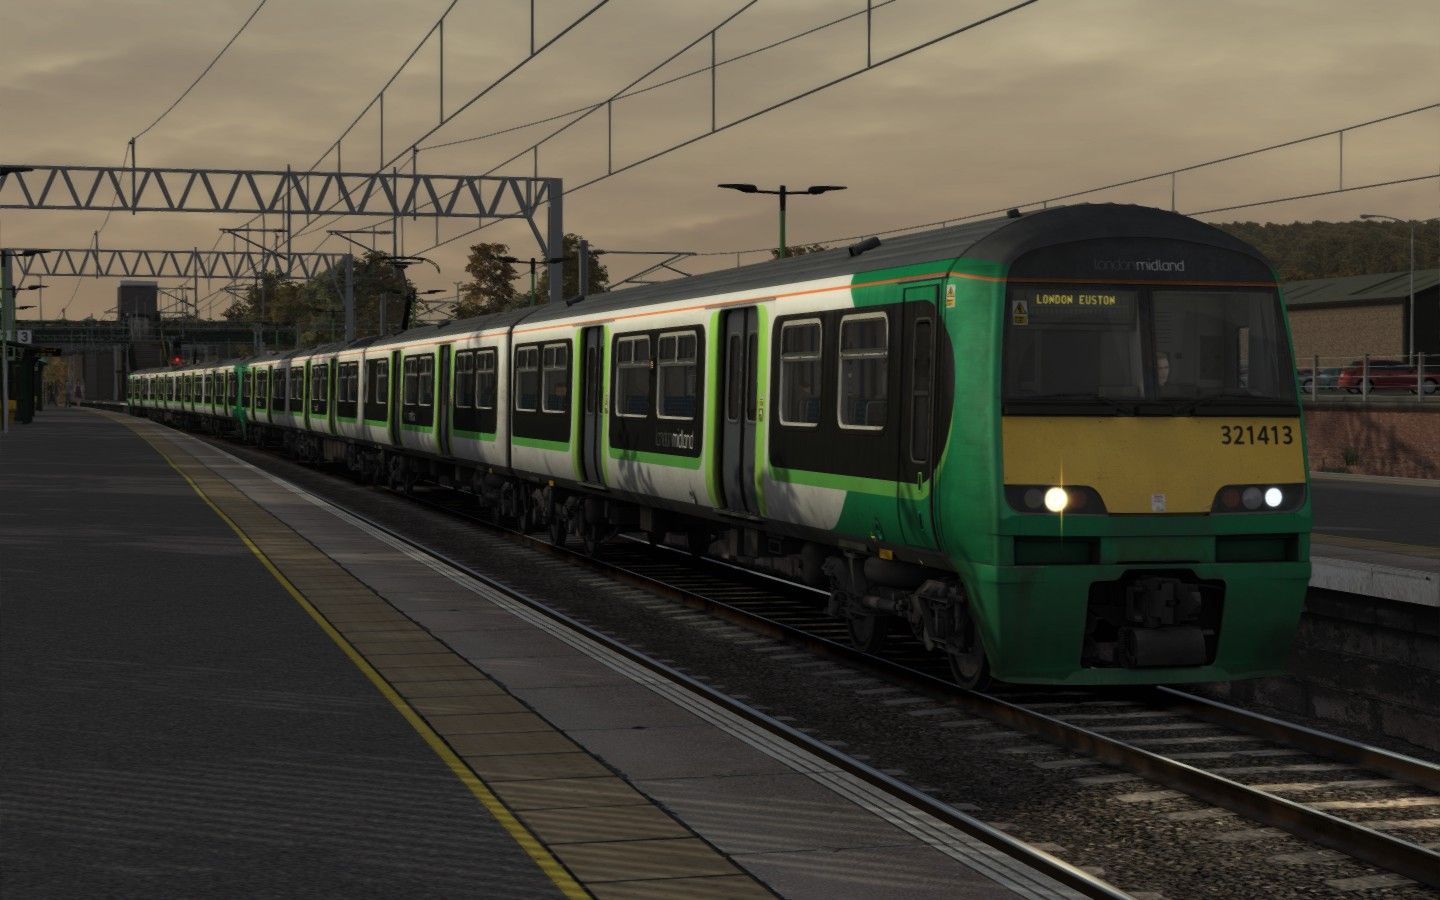 2T46 - 1727 Tring to London Euston (2014)